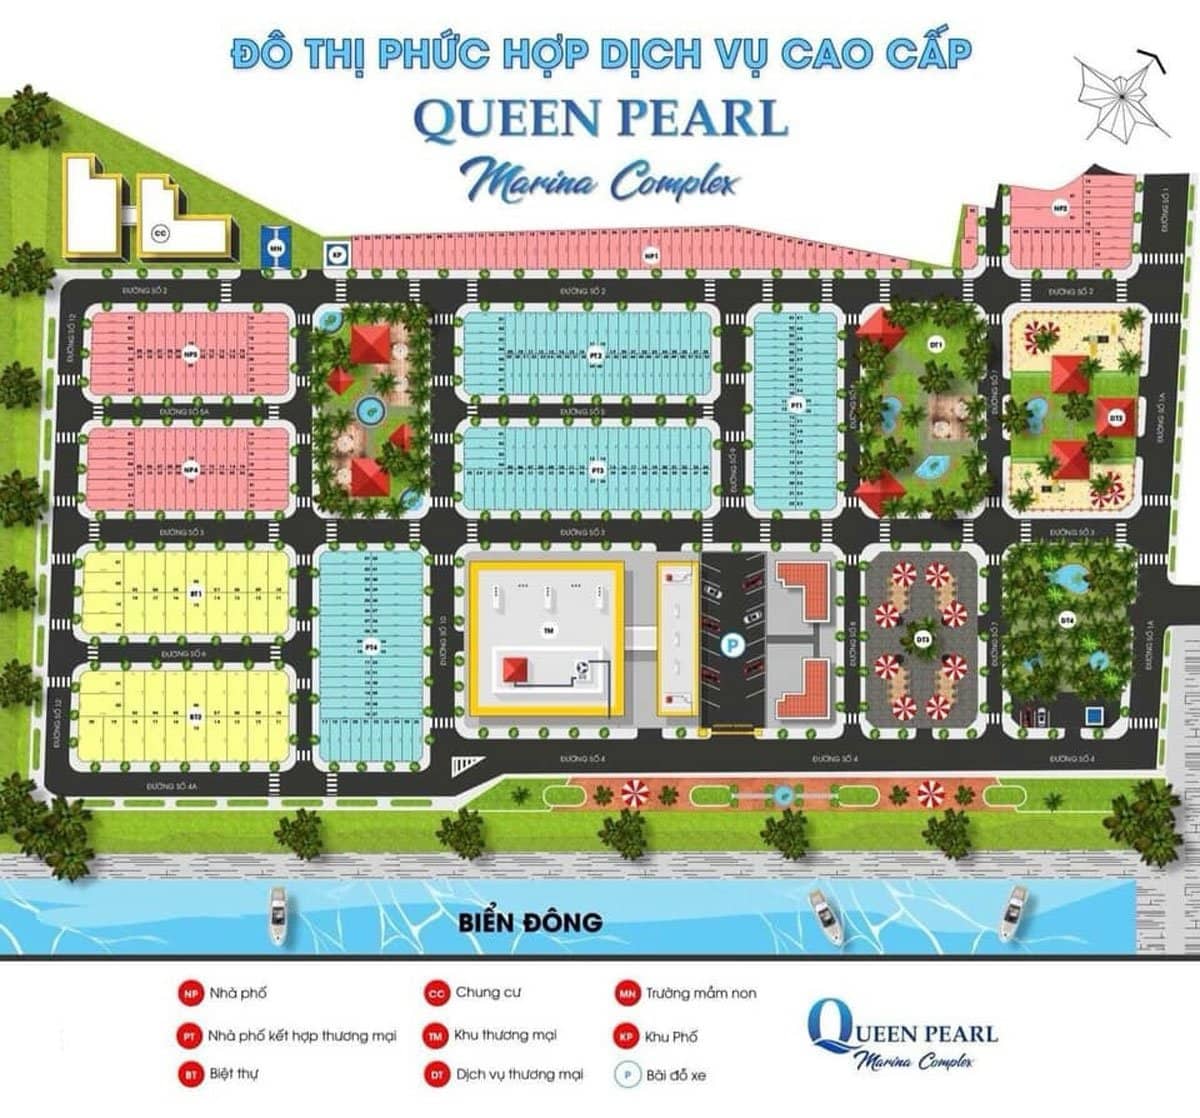 Đất nền dự án Queen Pearl Marina Complex